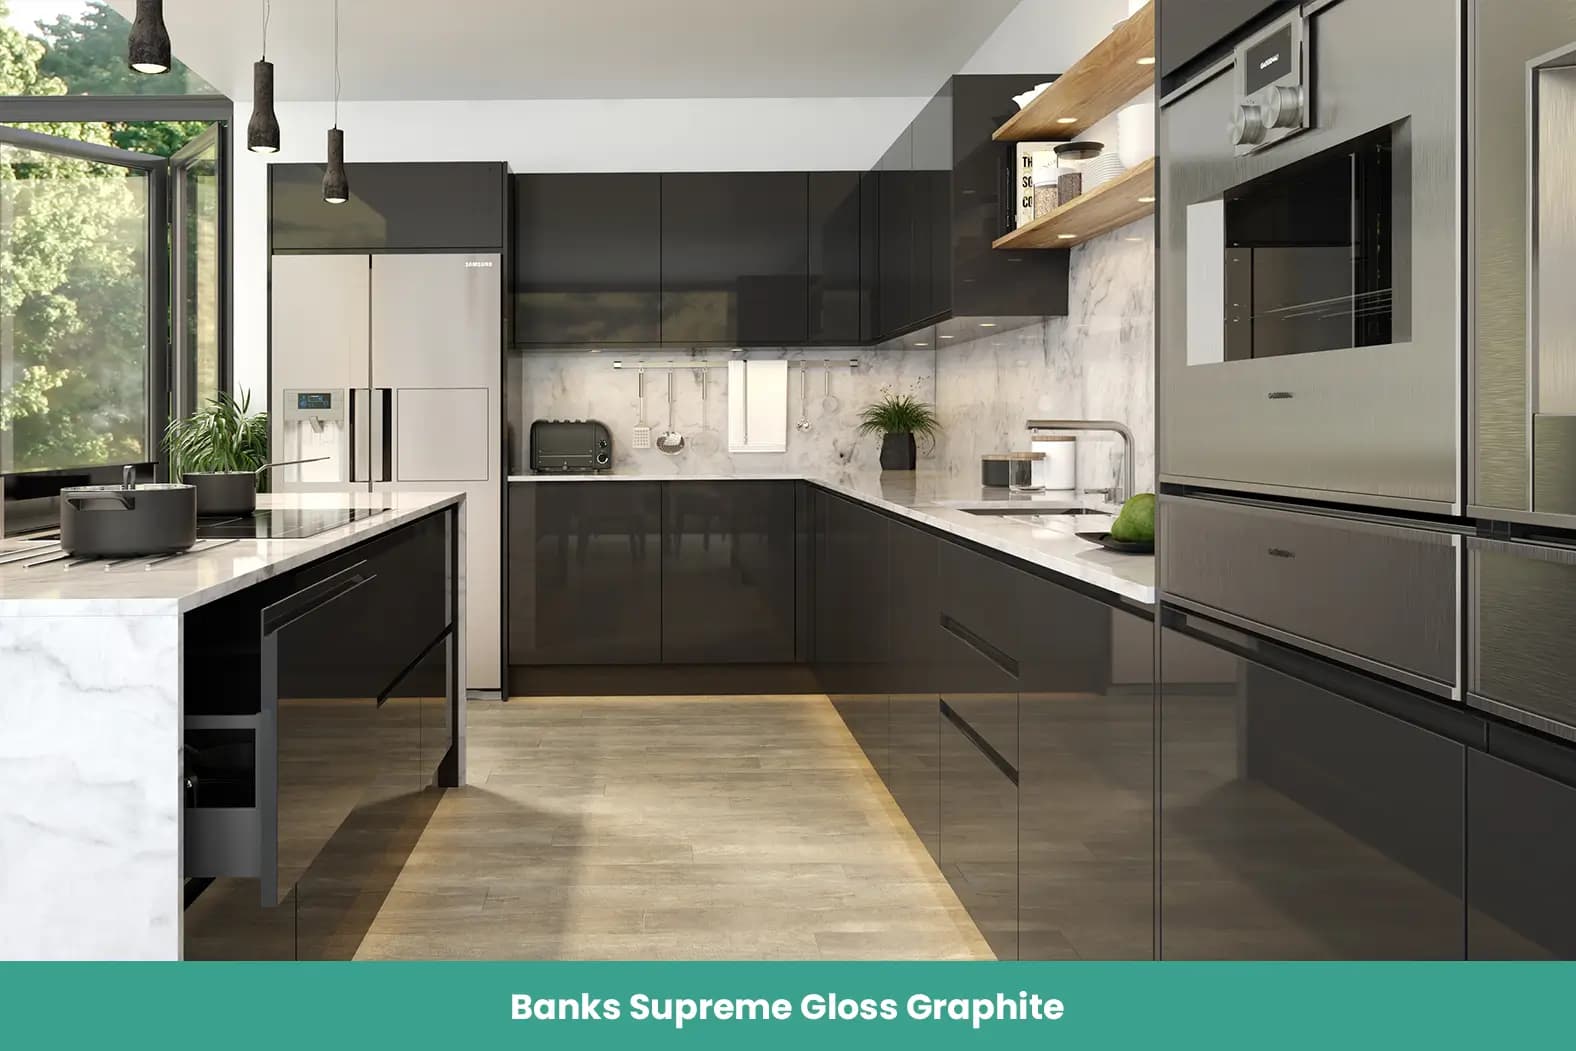 Banks Supreme Gloss Graphite Kitchen